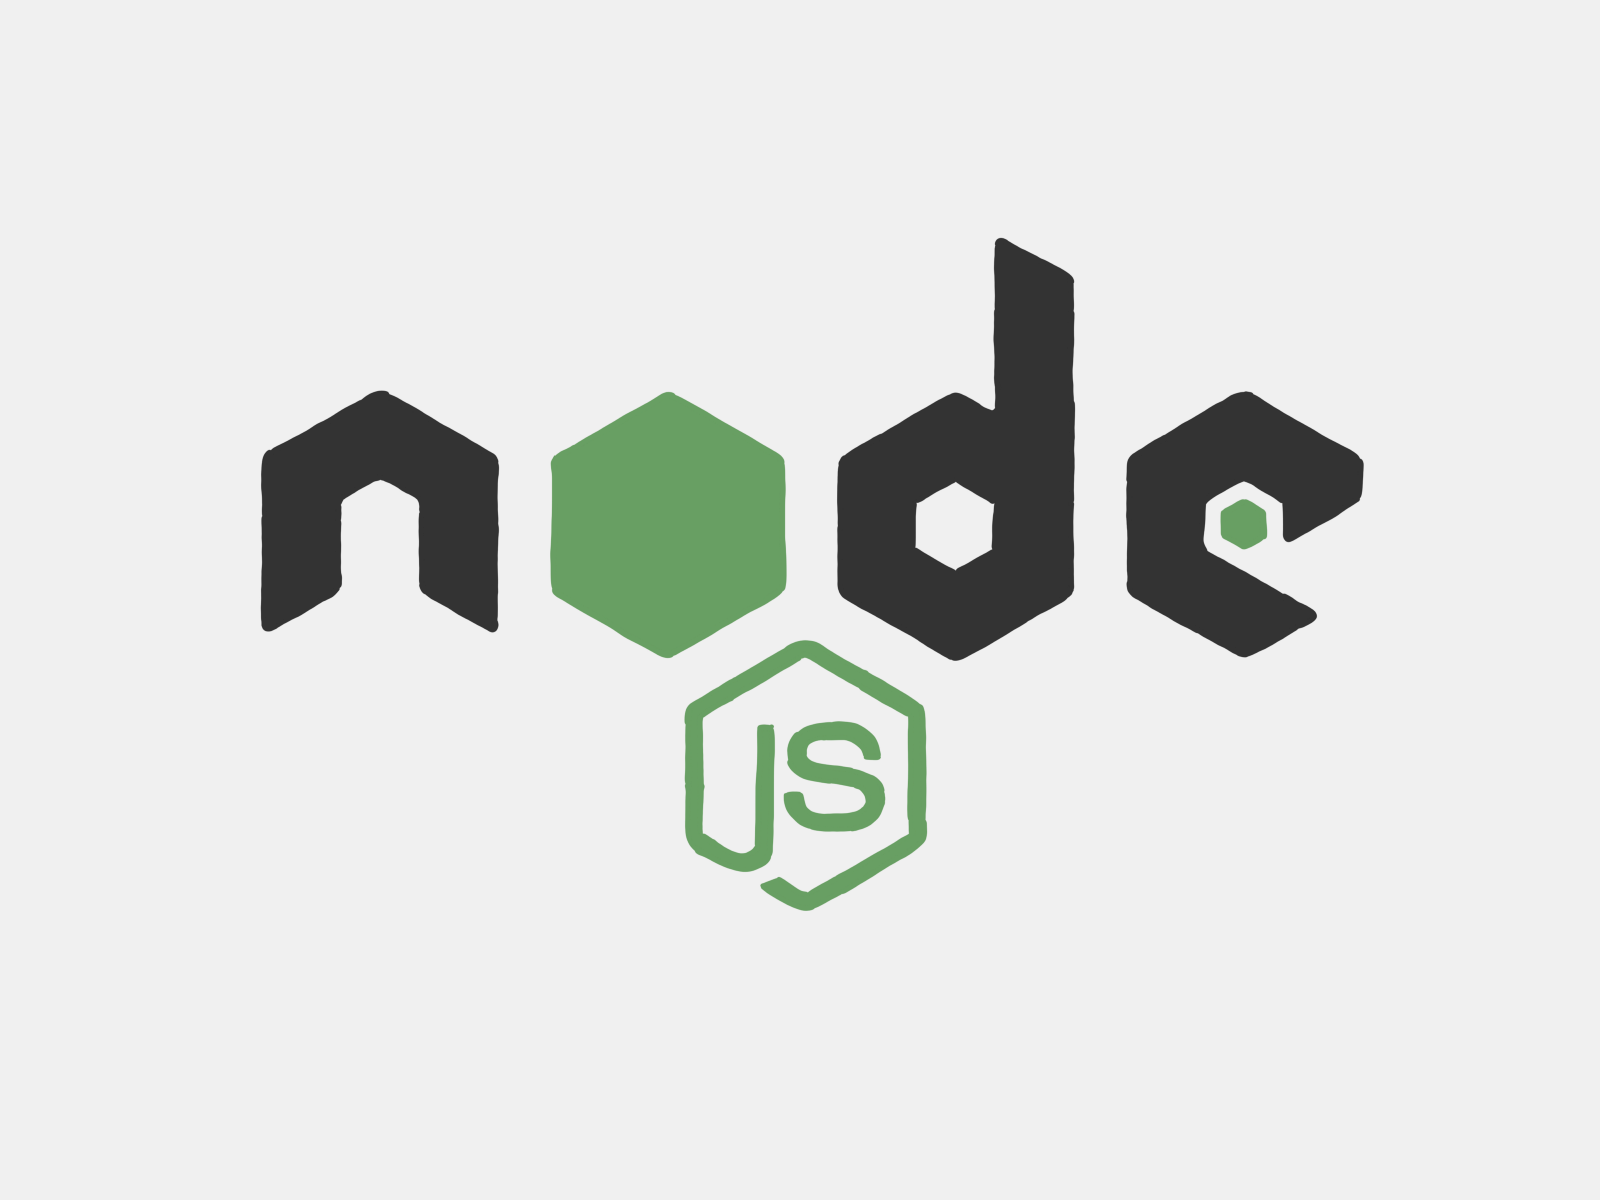 An illustration of the Node.js logo.